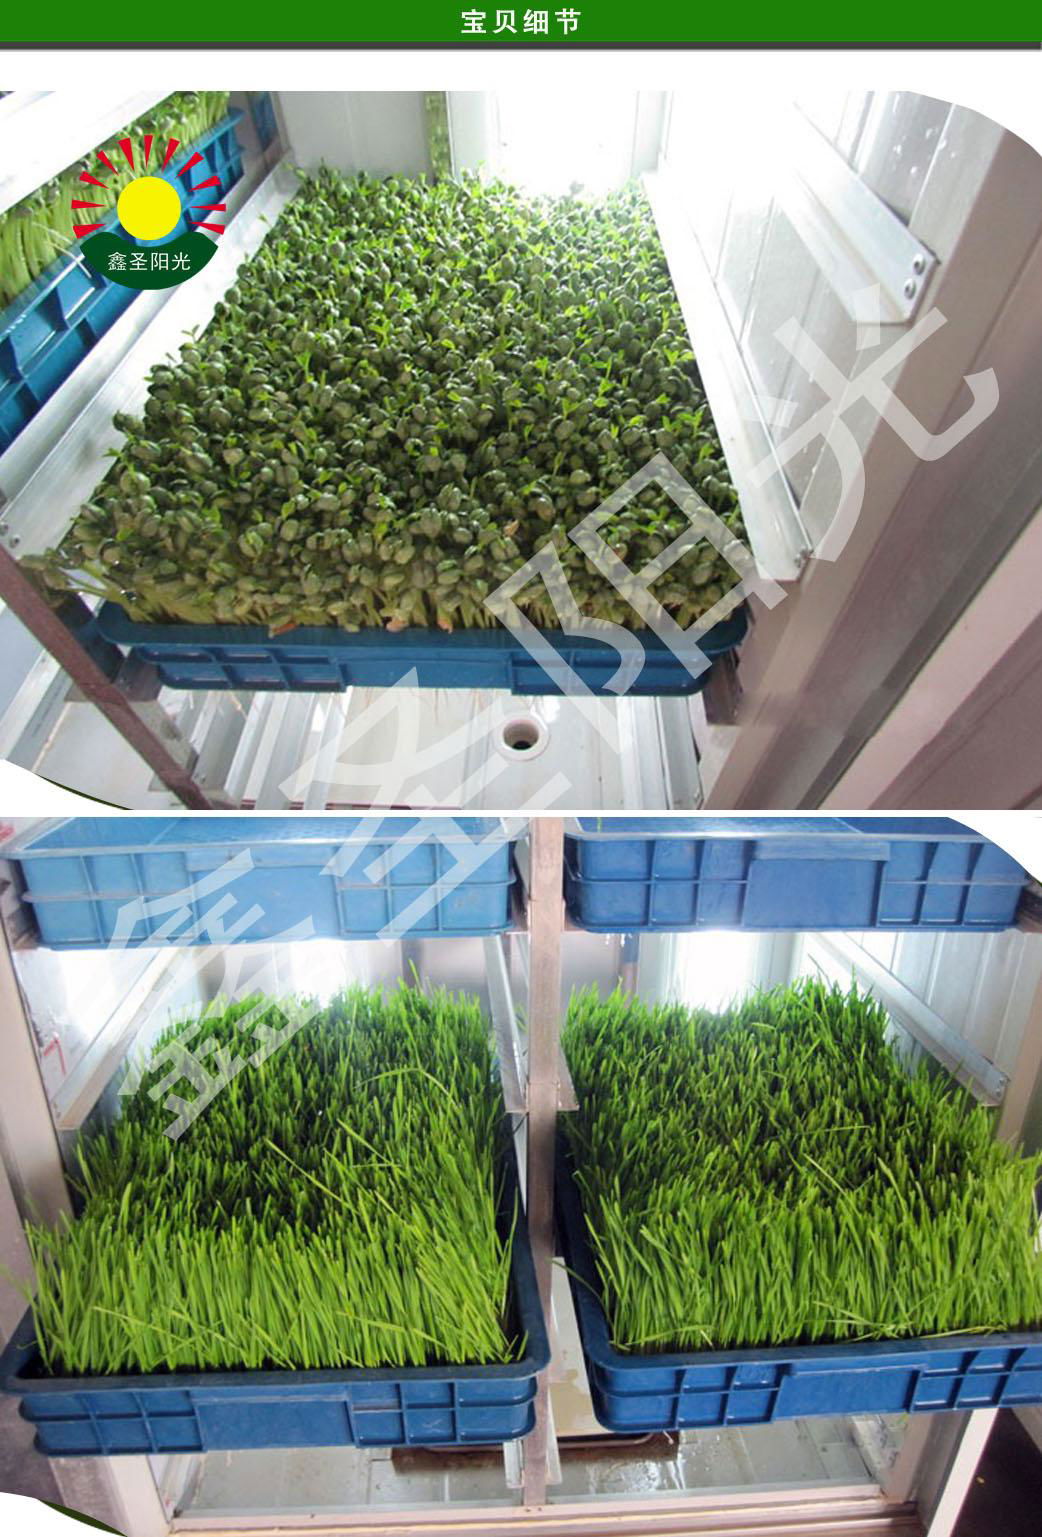 芽苗菜机商用全自动大型转绿机质量保证多功能特价优质芽苗机 3